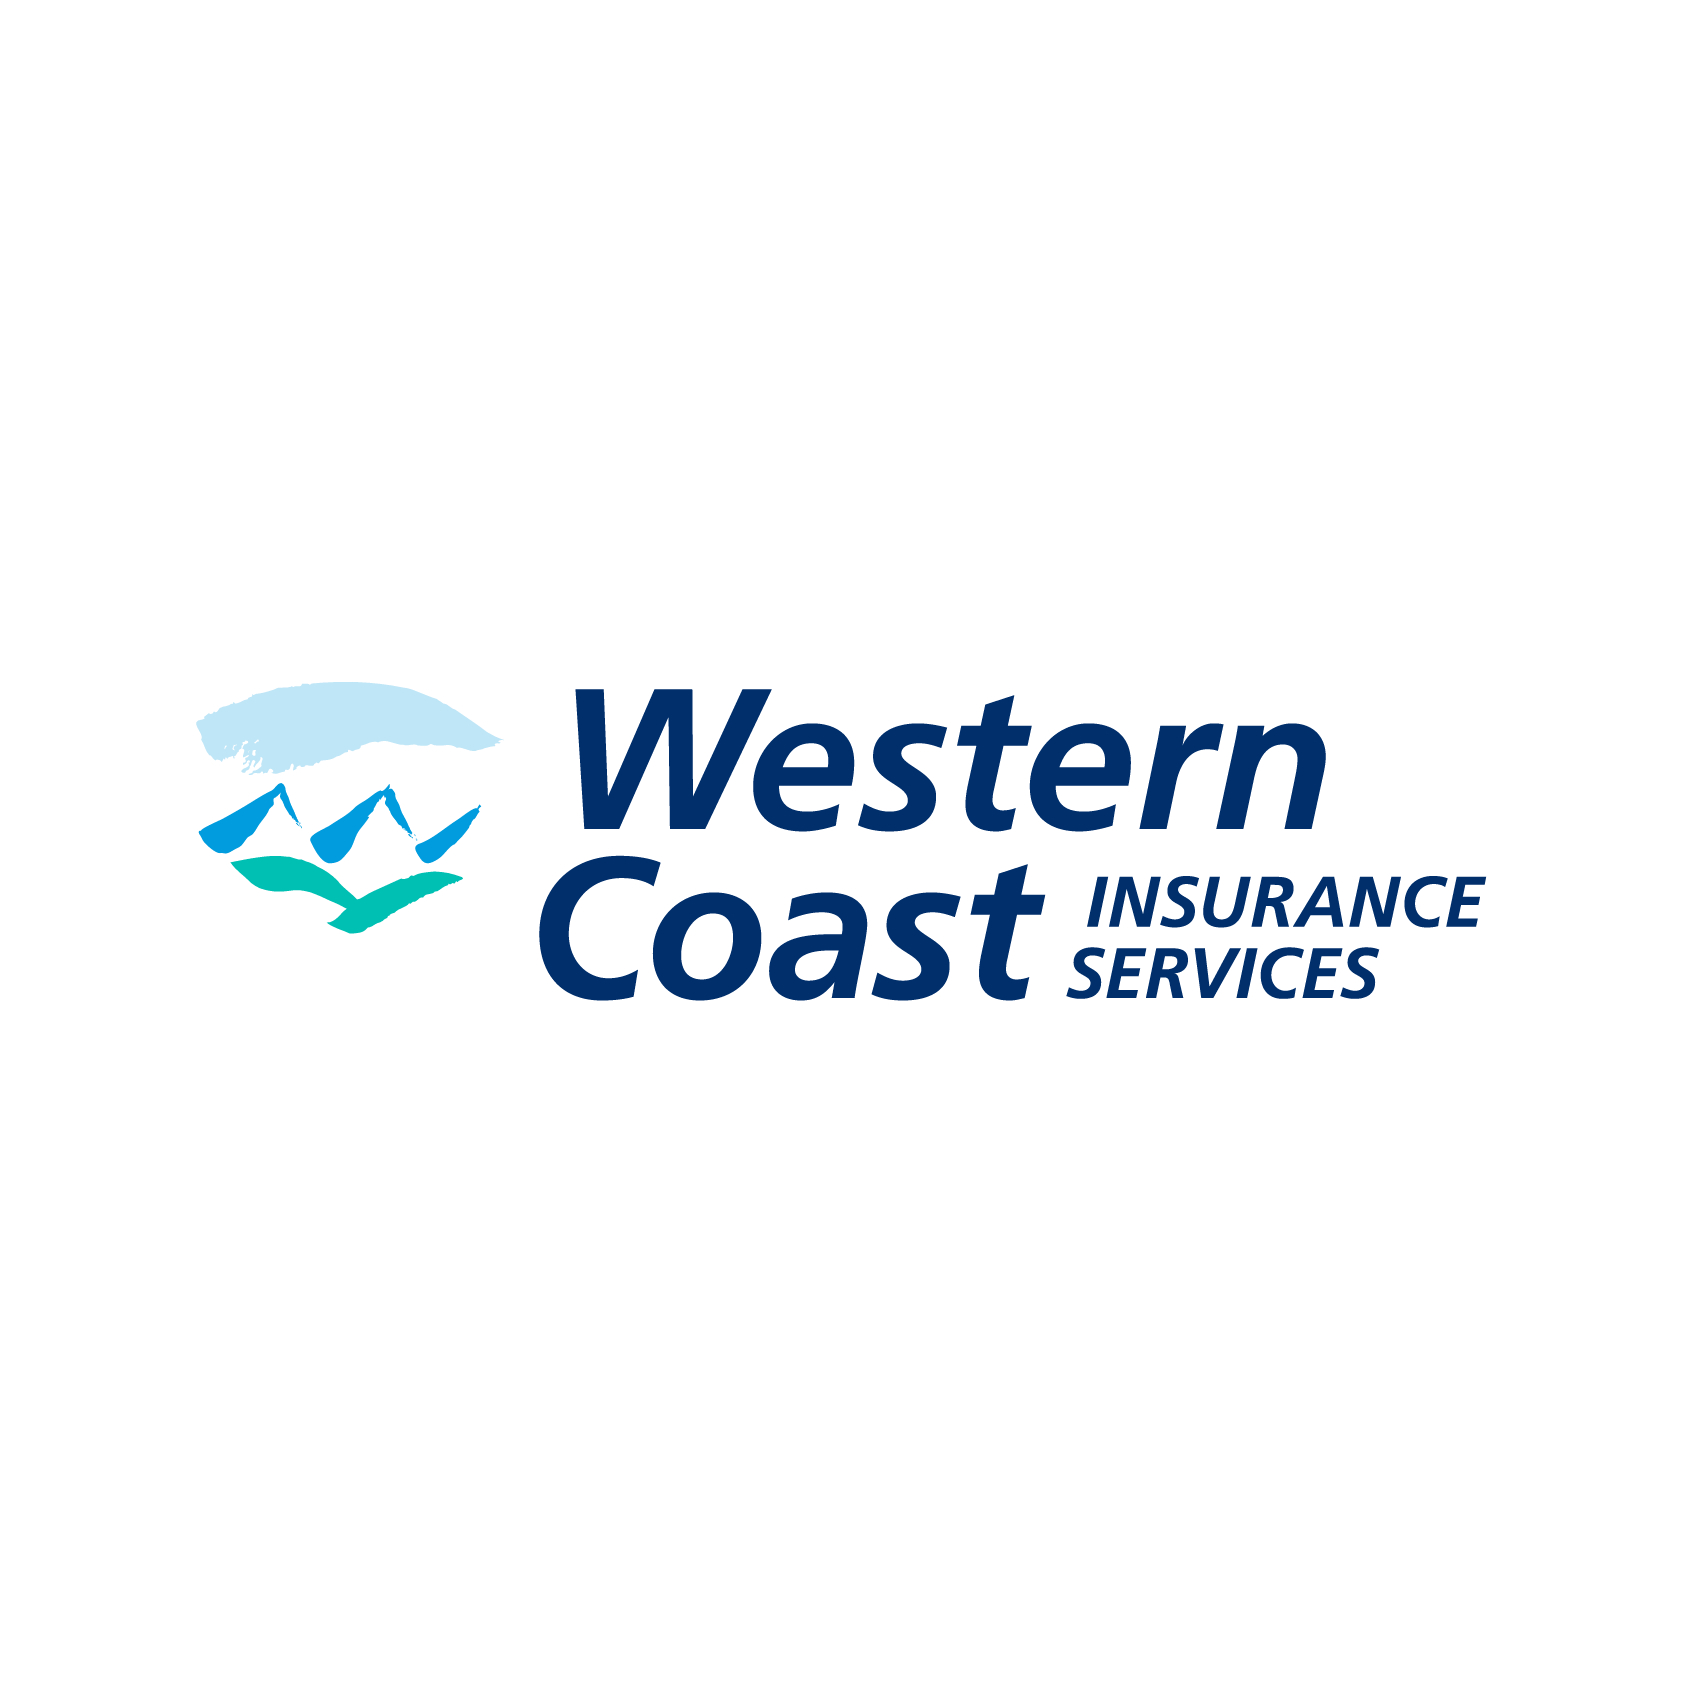 Western Coast Insurance Services Ltd. - Courtiers et agents d'assurance